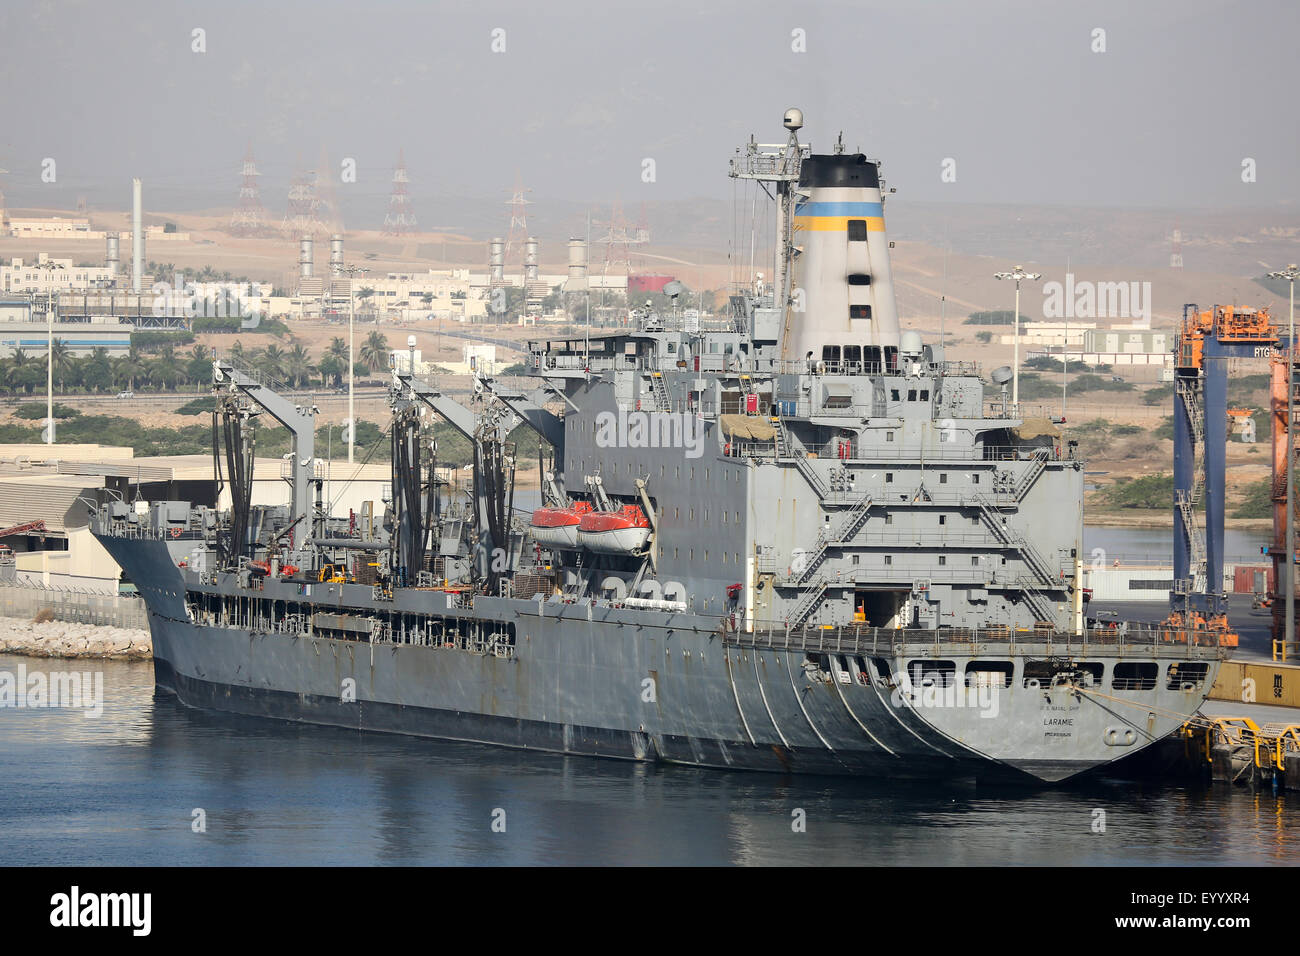 USS Laramie. Reposición americana buque por fuerzas de la marina de EE.UU. Atracó en Salalah, Omán. Foto de stock